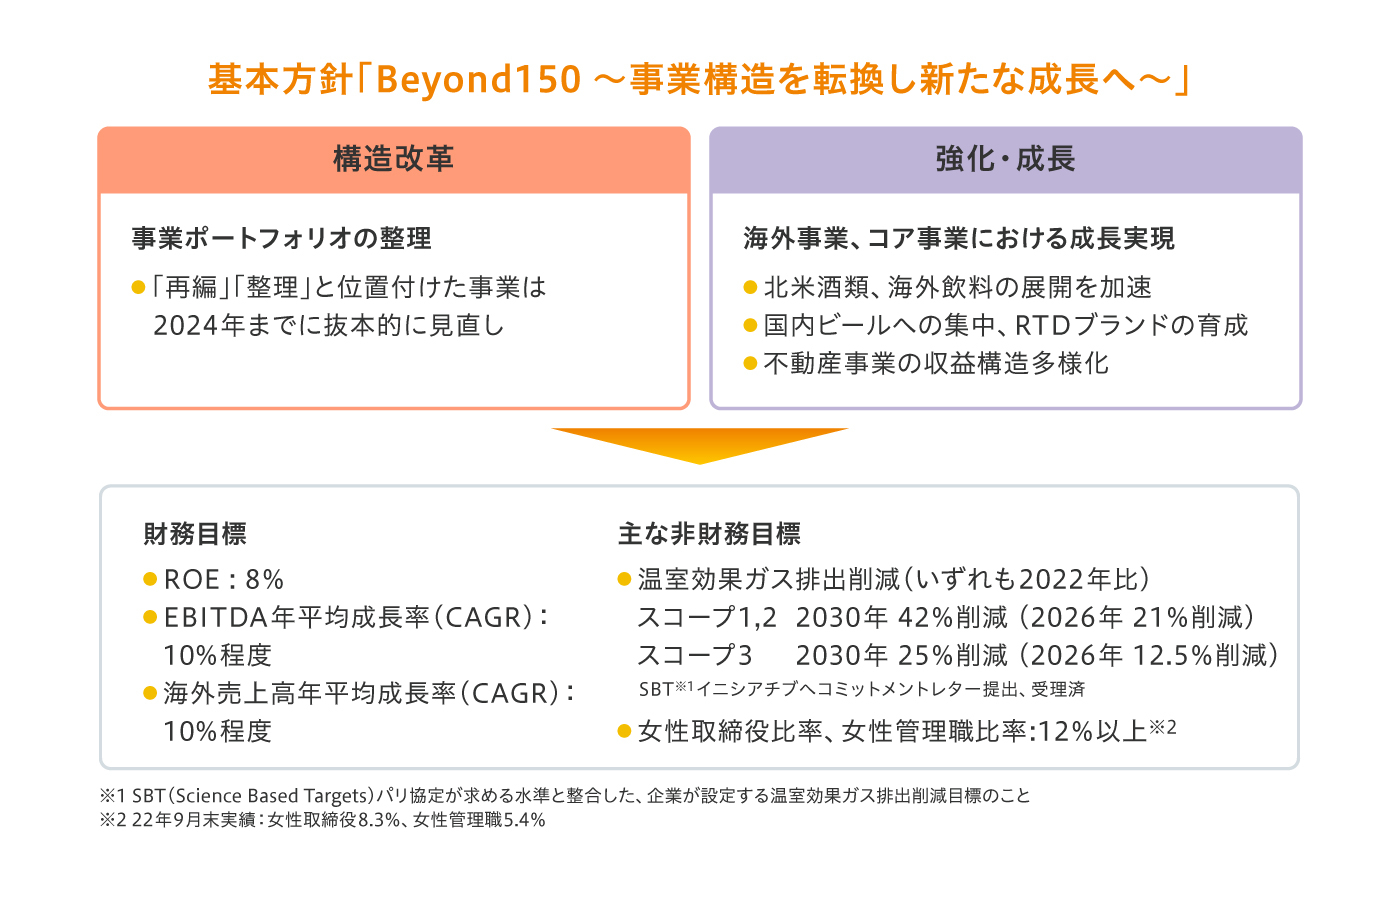 基本方針「Beyond150 ～事業構造を転換し新たな成長へ～」